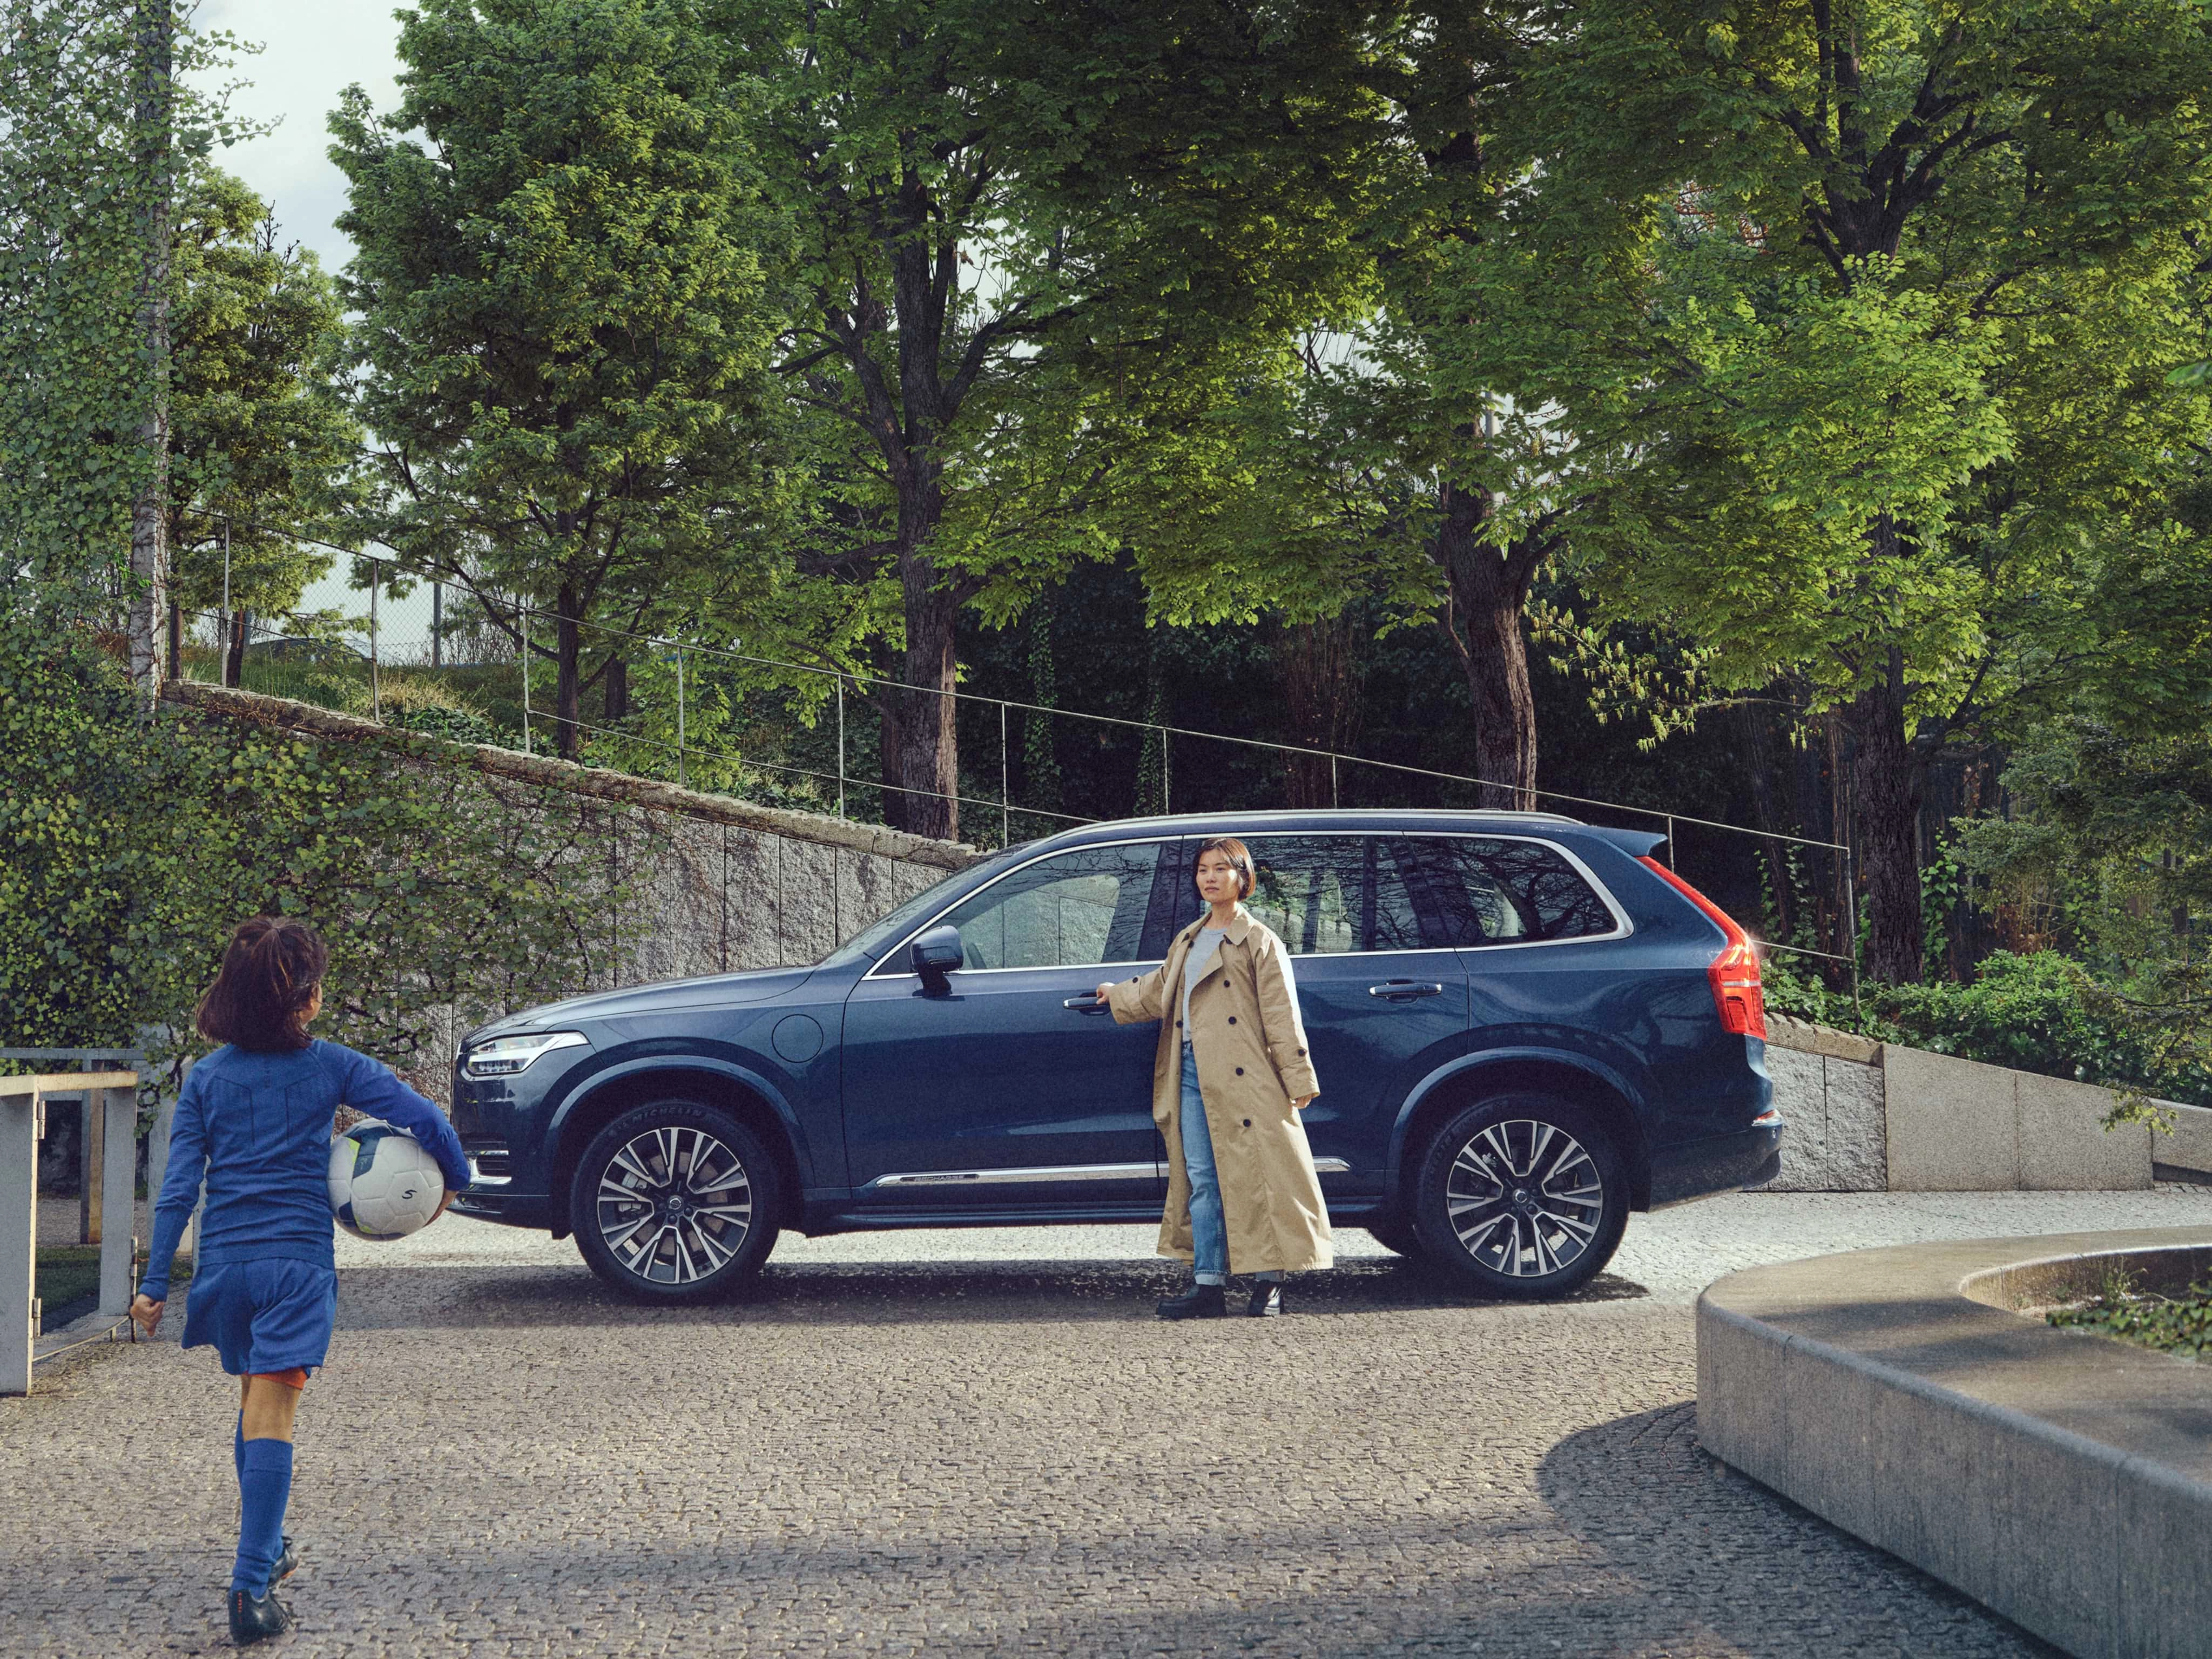 Майка стои до своя автомобил Volvo XC90 в цвят Denim Blue, докато дъщеря ѝ се приближава, облечена за футболна тренировка и държи топка.